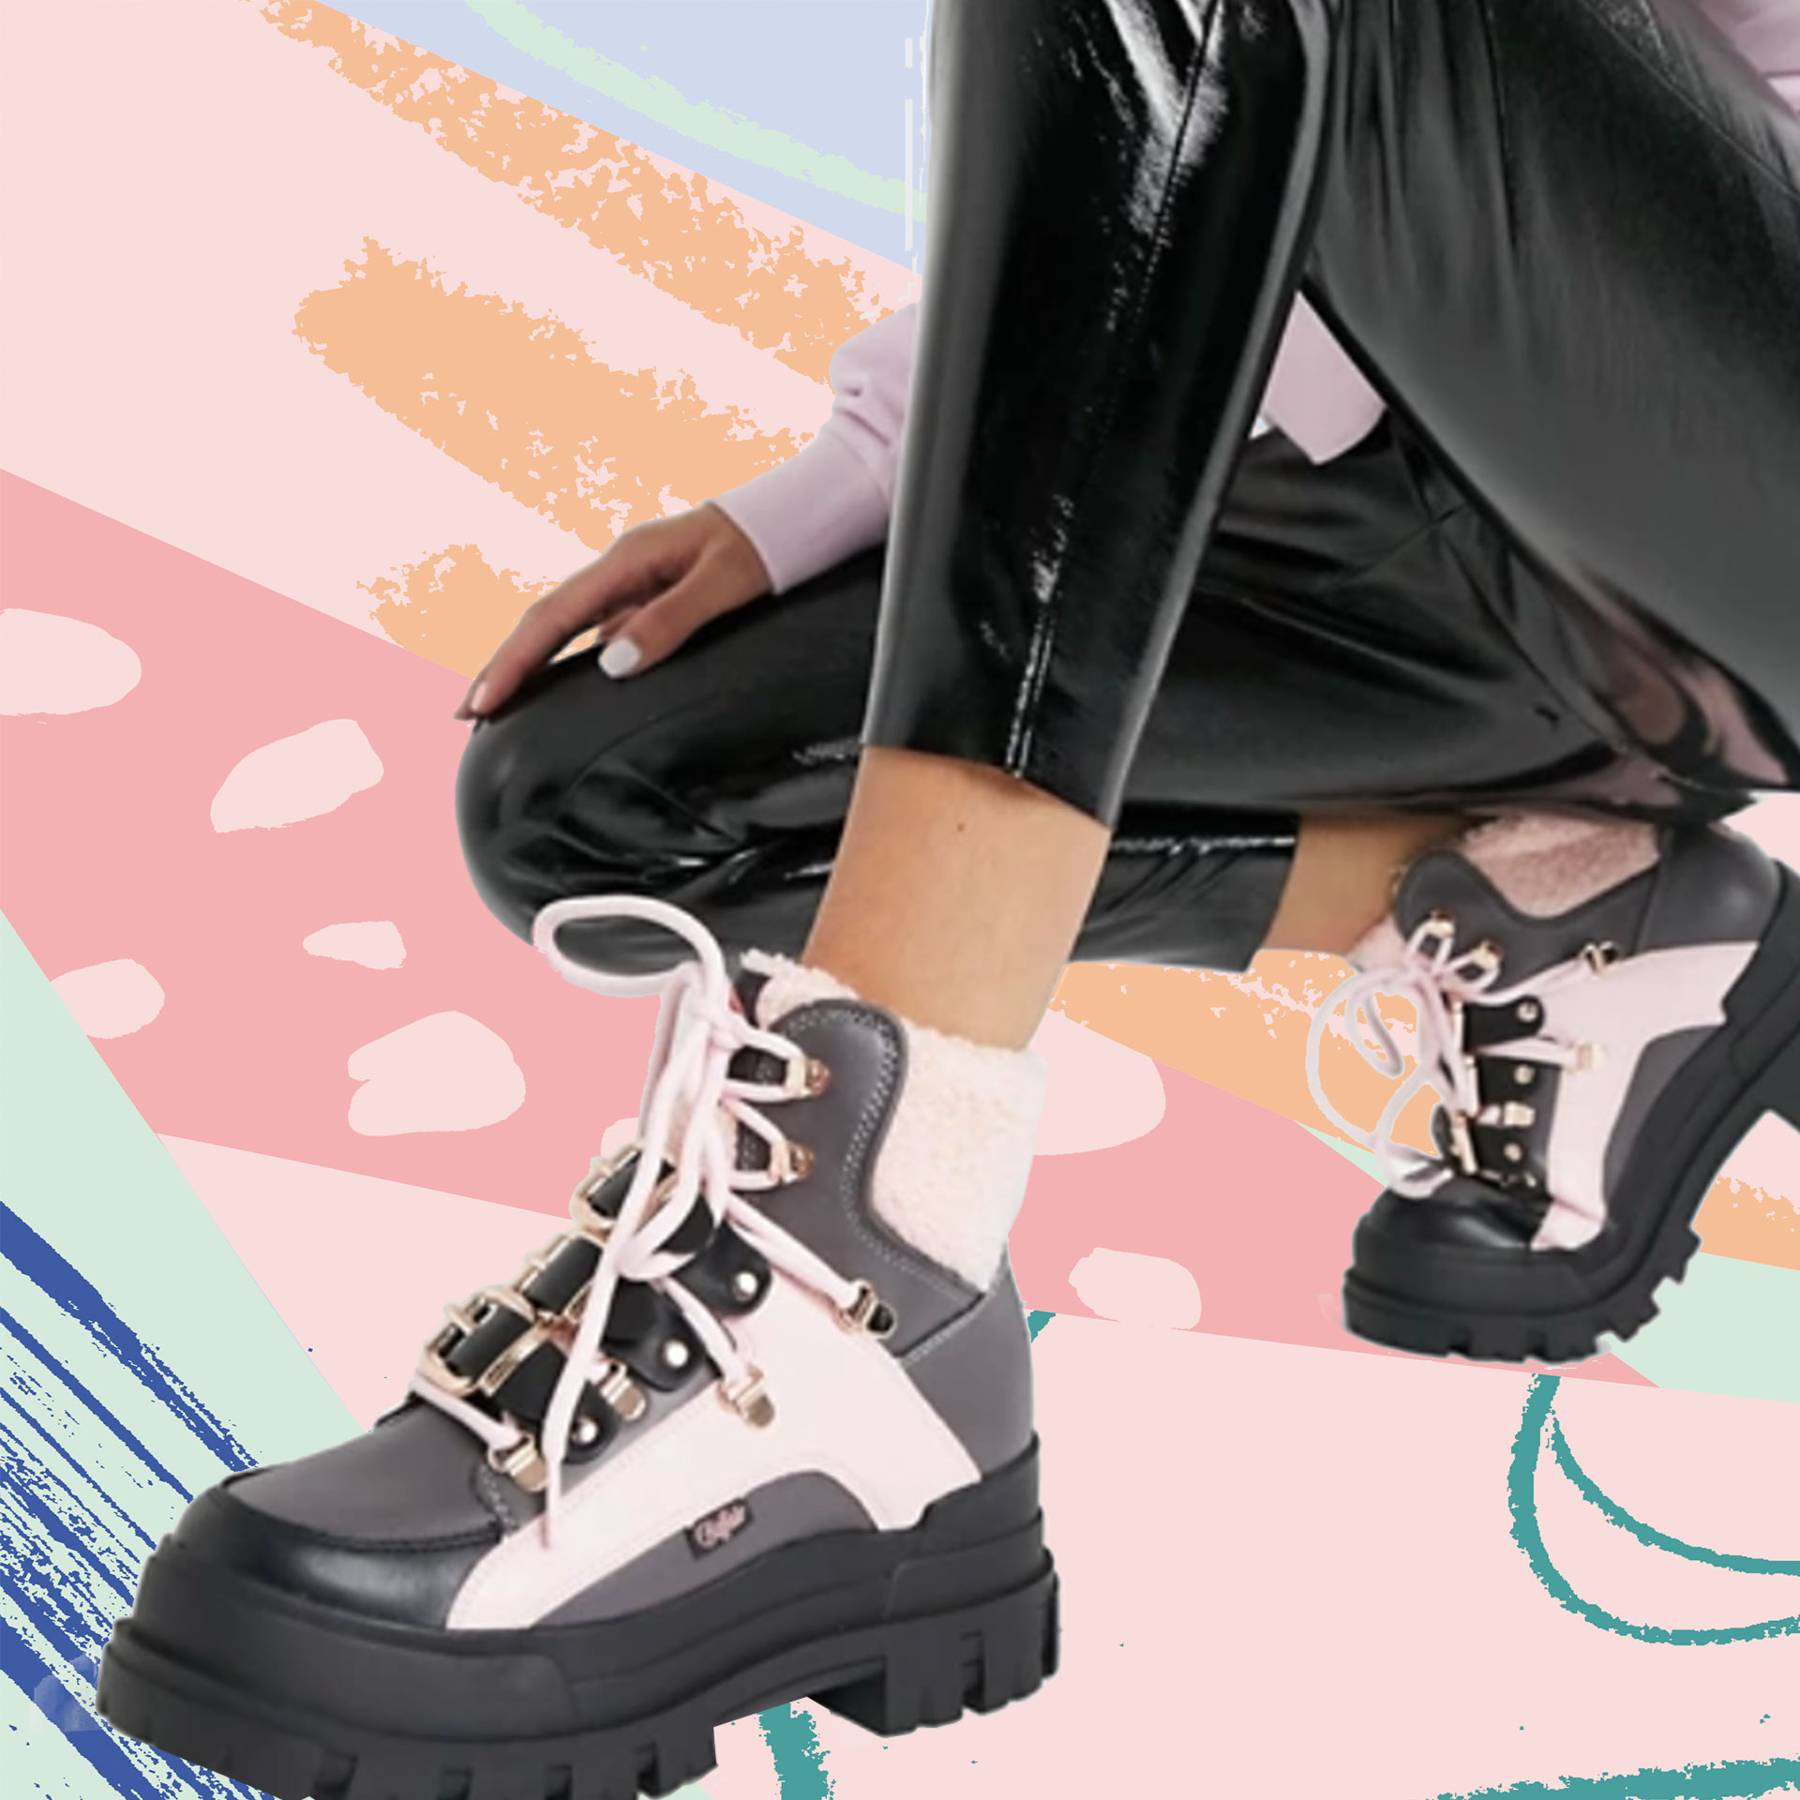 15 Best Walking Boots for Women 